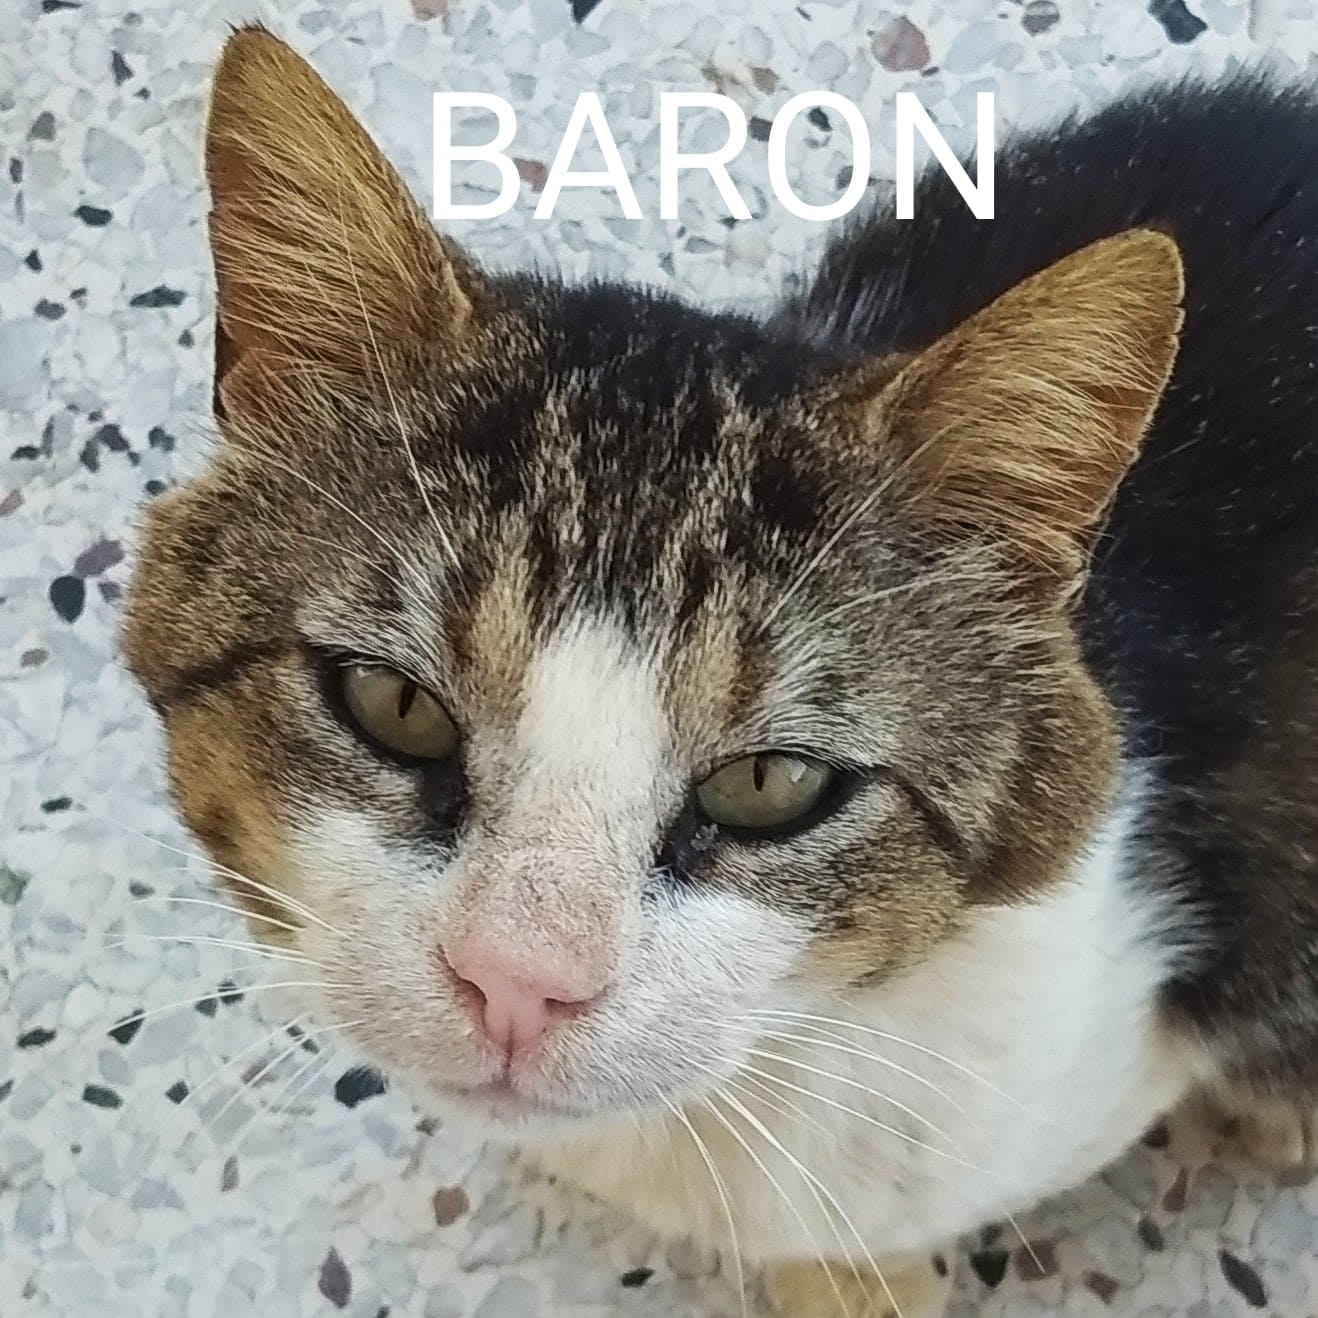 Baron (emergency)